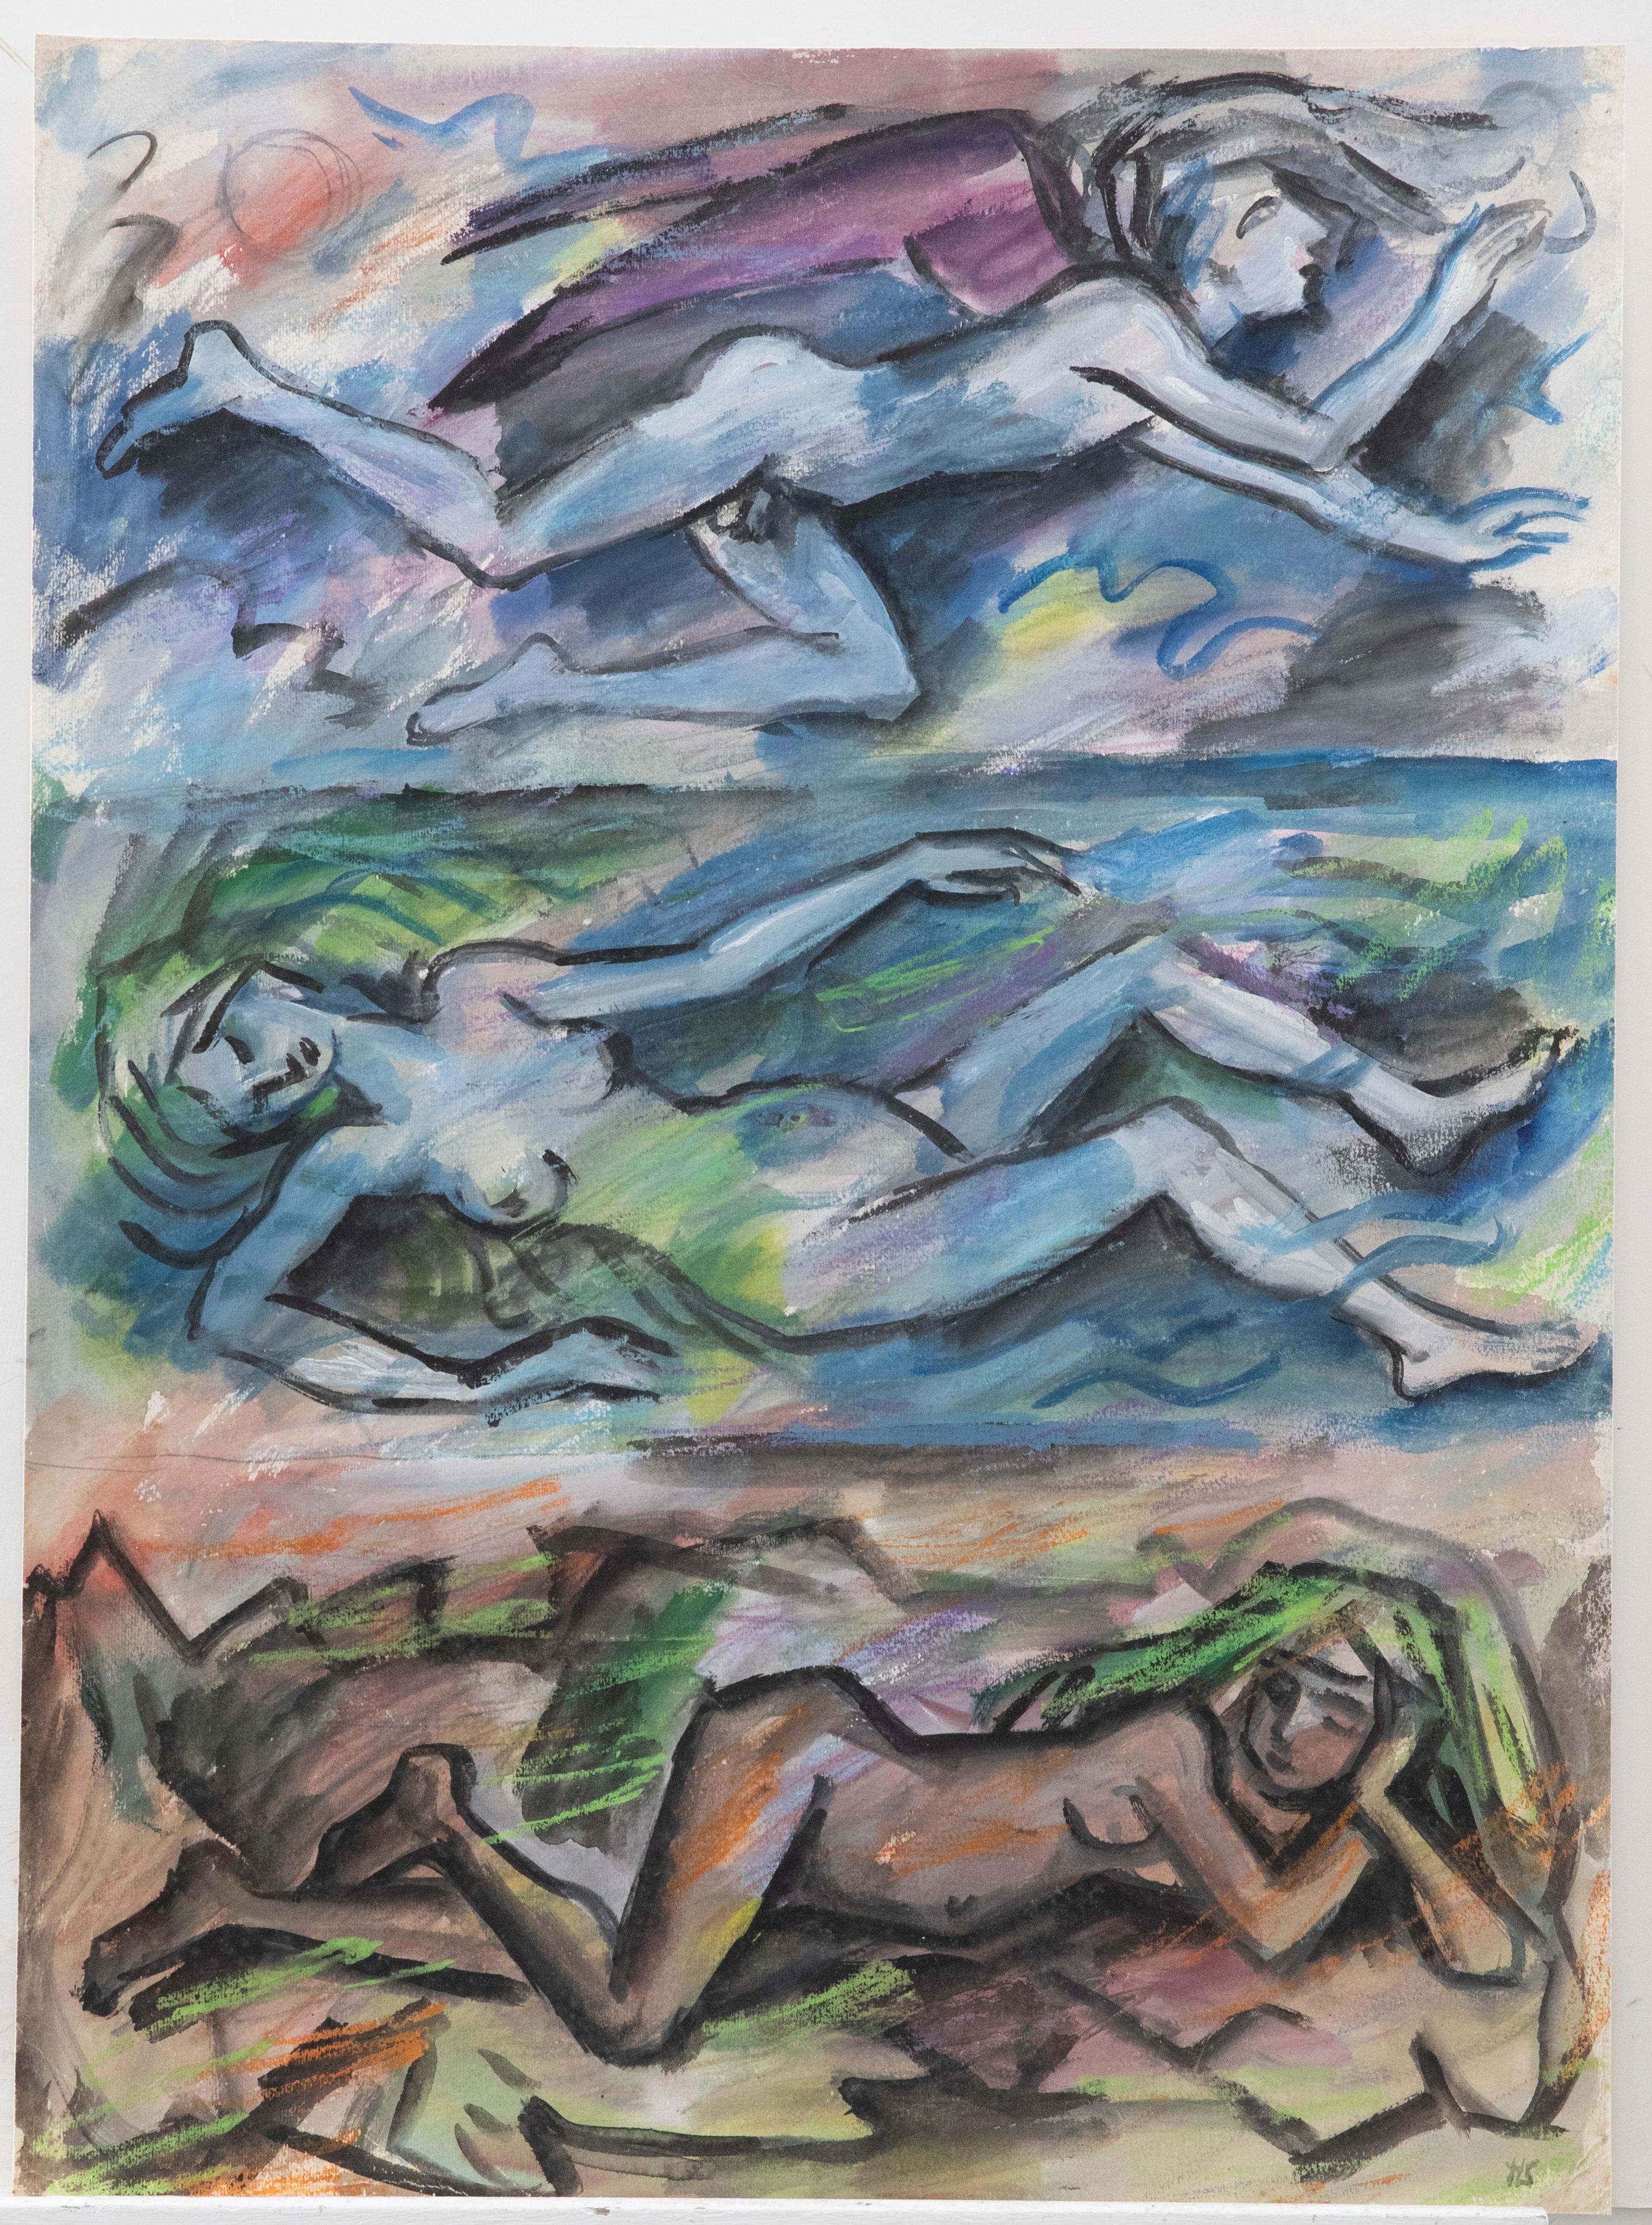 Helen Steinthal (1911-1991) - Aquarell des 20. Jahrhunderts, Akte in Farbe – Art von Unknown